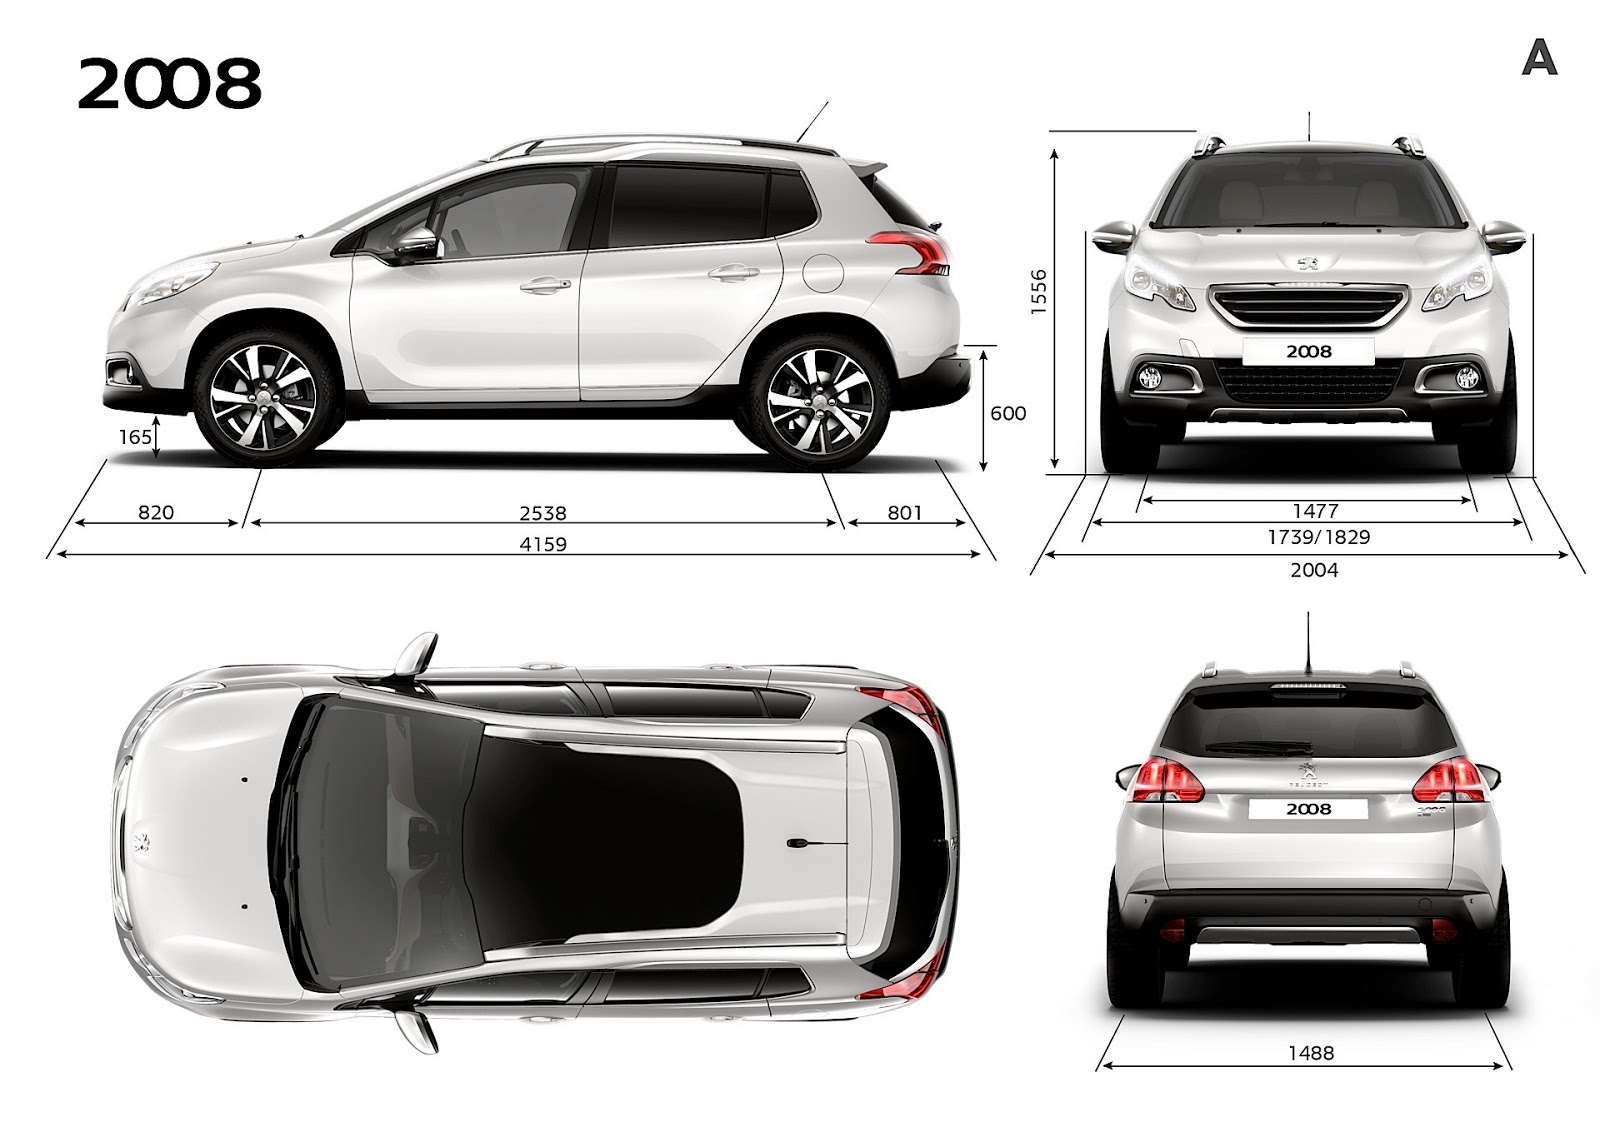 Peugeot 2008: dimensioni, interni, motori, prezzi e concorrenti